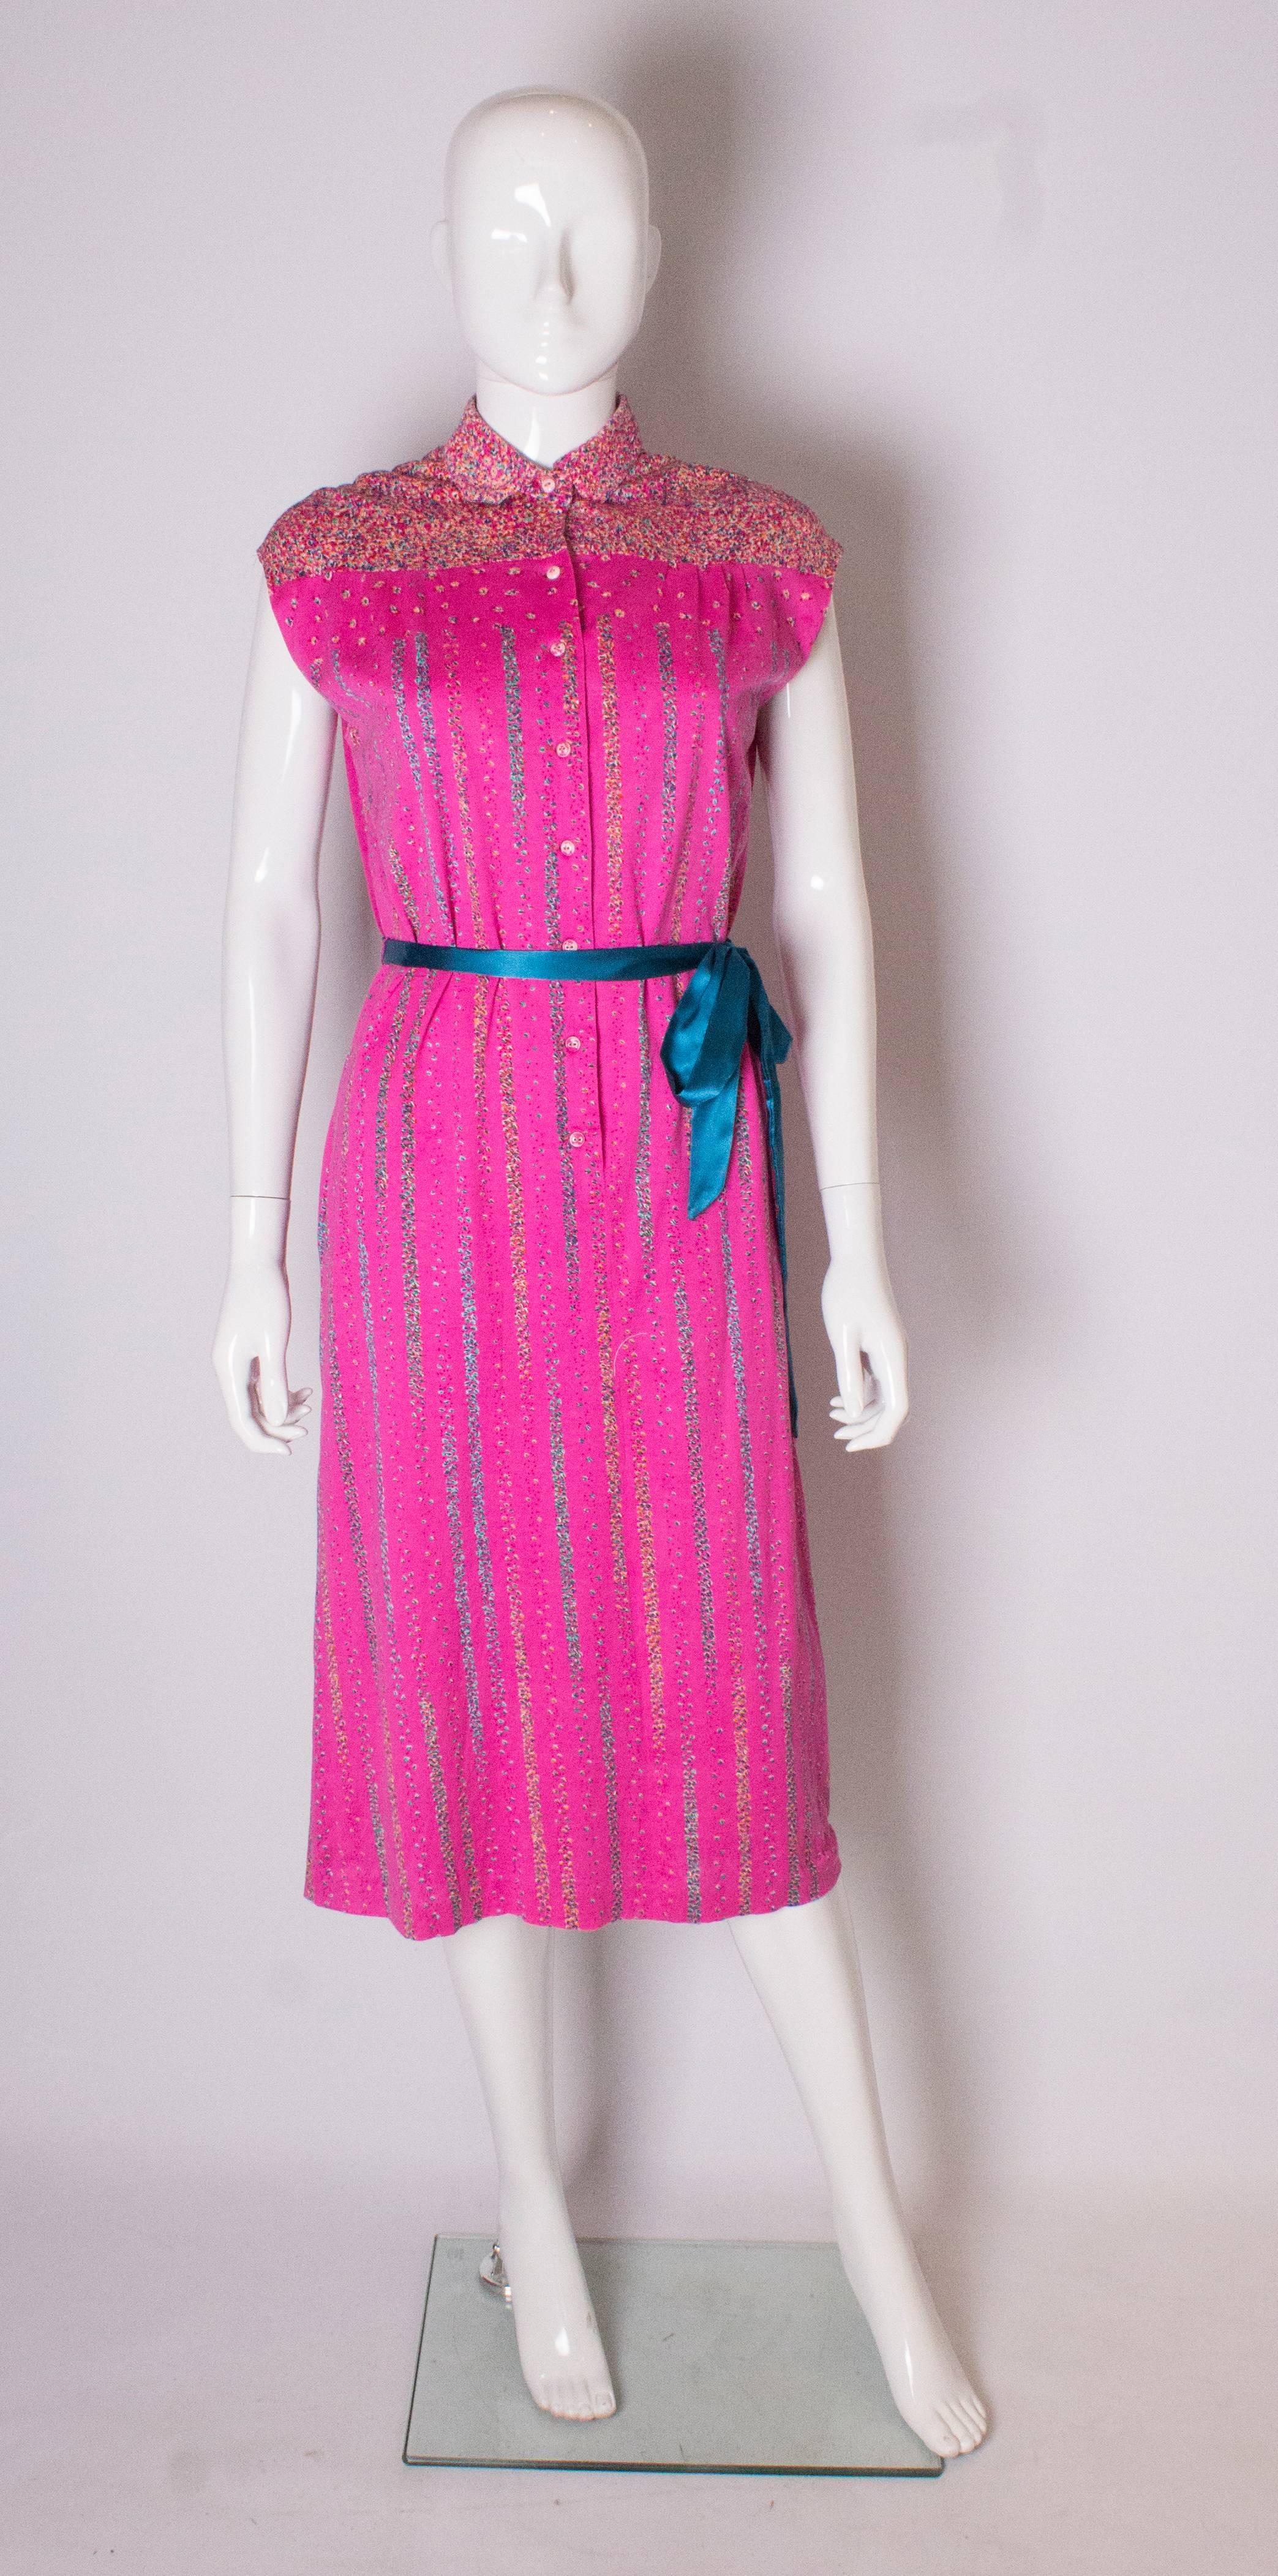 Hübsches rosa Tageskleid aus Baumwolle von Fink. Das Kleid hat einen bedruckten Kragen und eine Passe, eine Öffnung mit 8 Knöpfen, Taschen auf beiden Seiten und Gürtelreifen. Es ist vollständig gefüttert.
